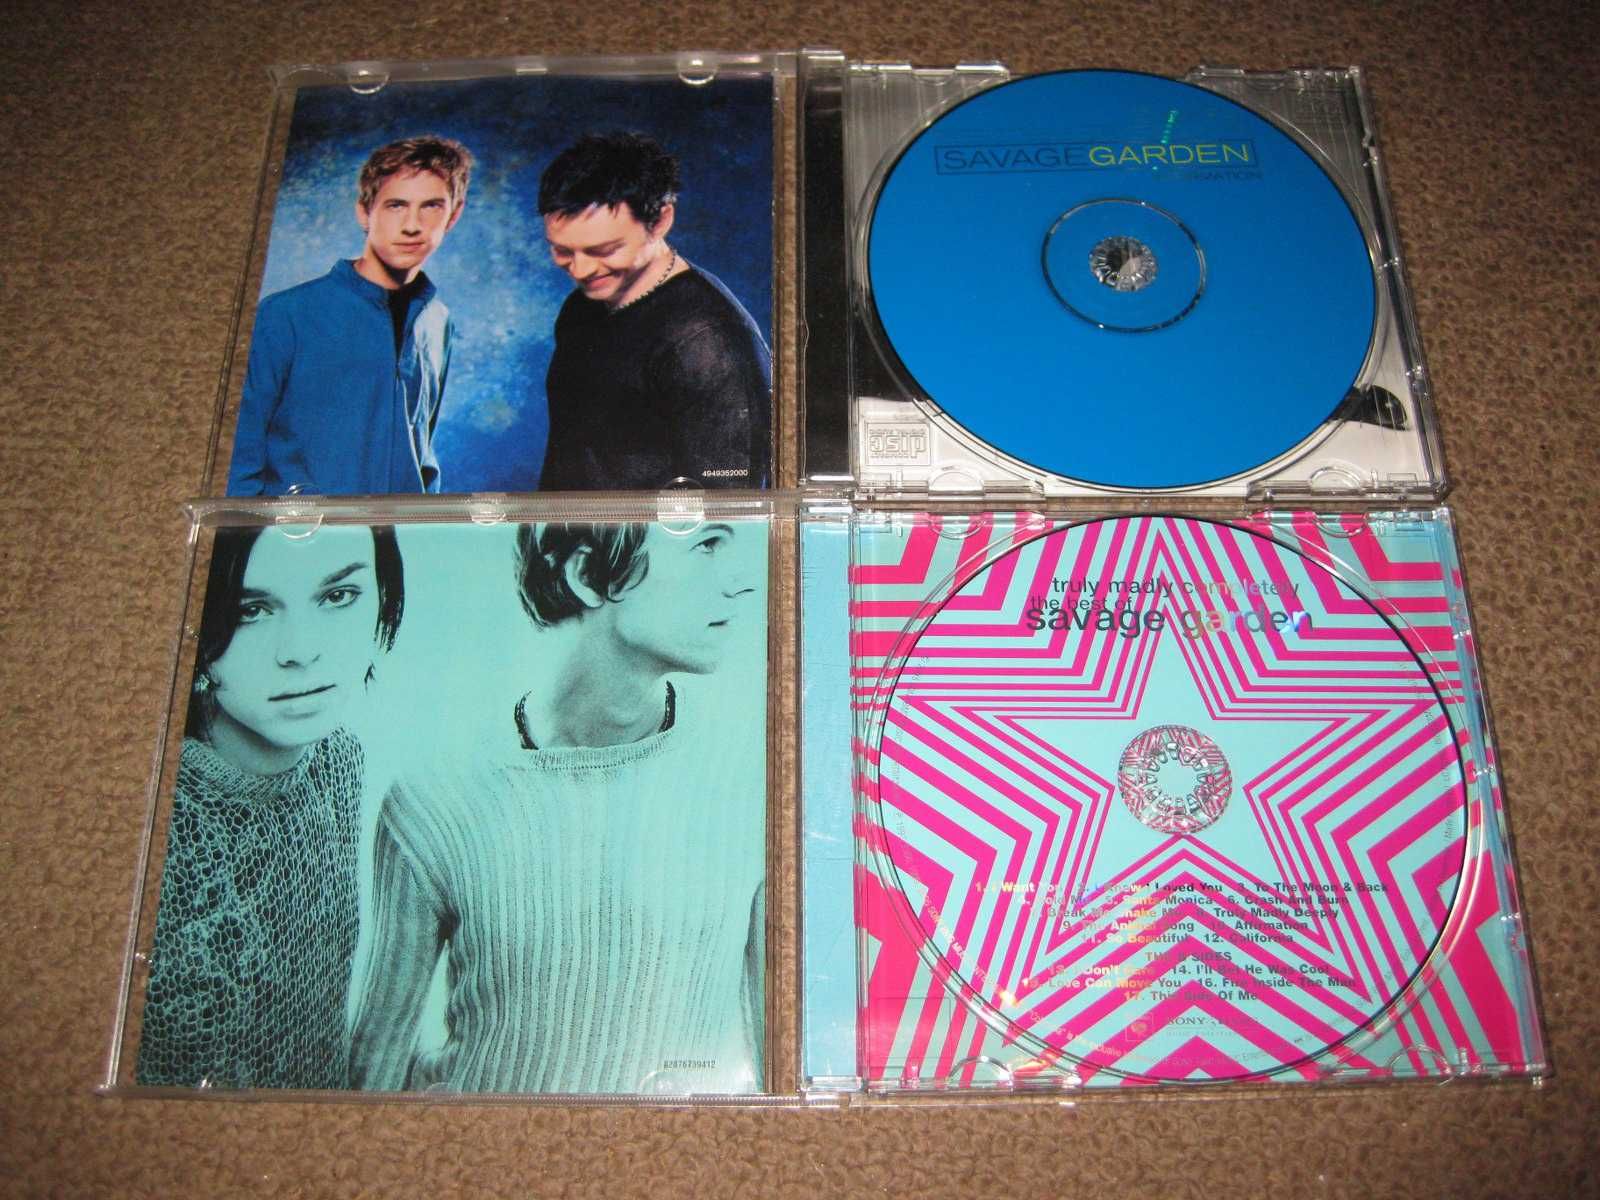 2 CDs dos "Savage Garden" Portes Grátis!